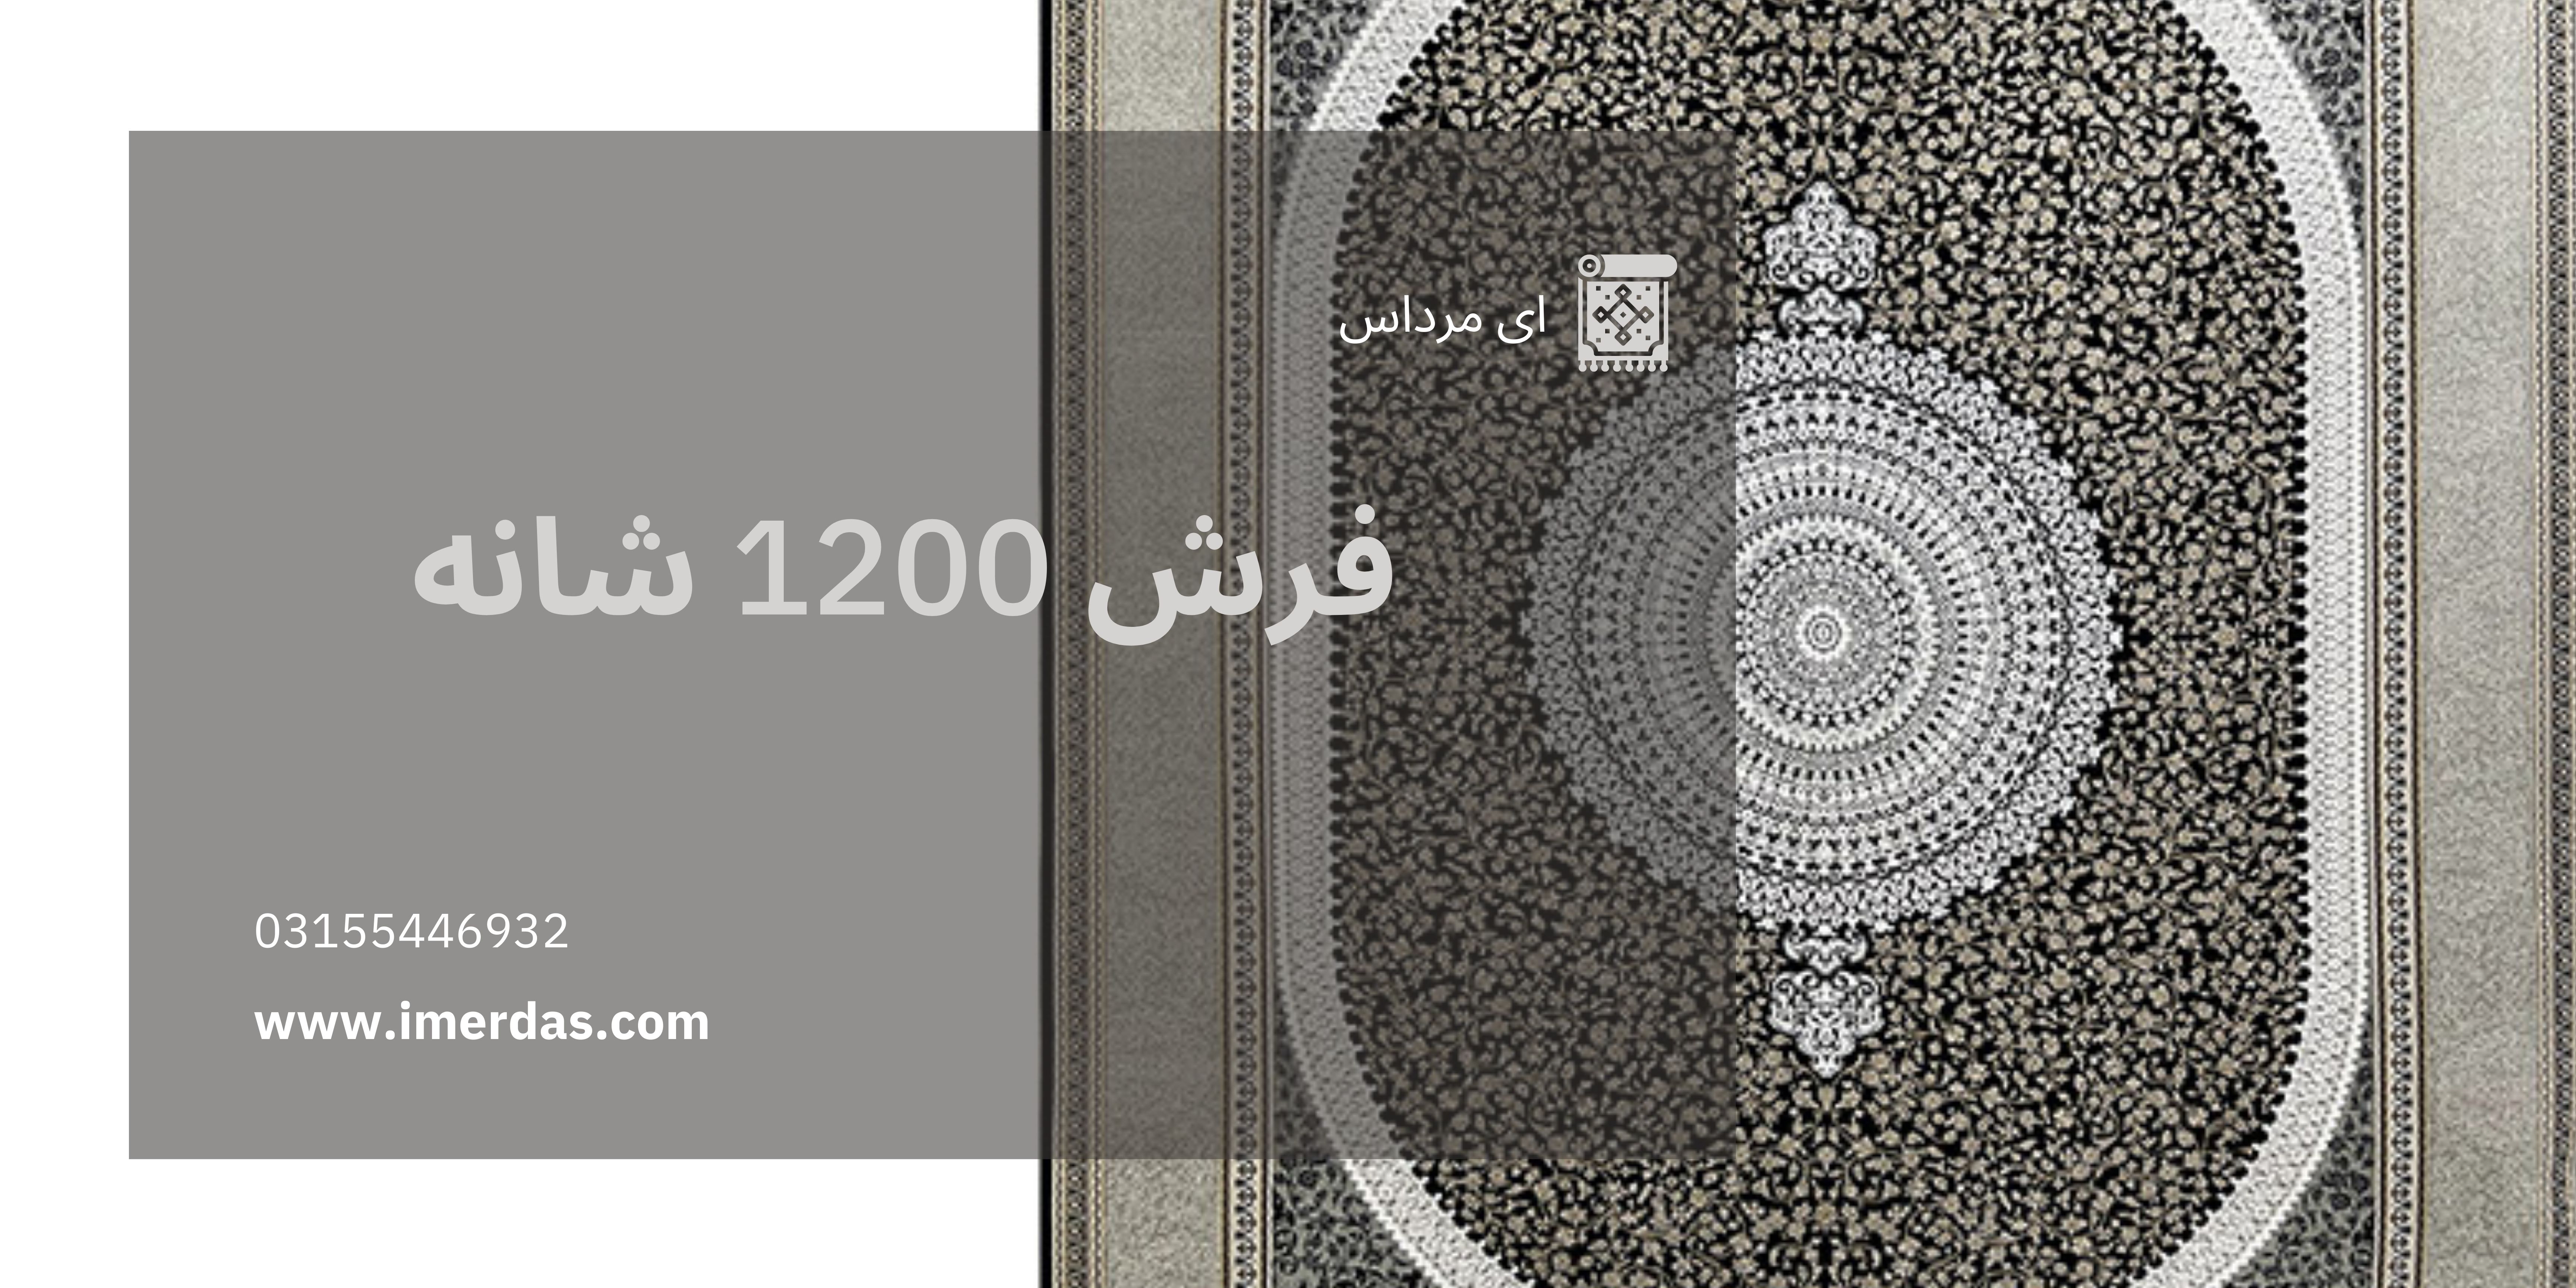 فرش 1200 شانه - imerdas.com